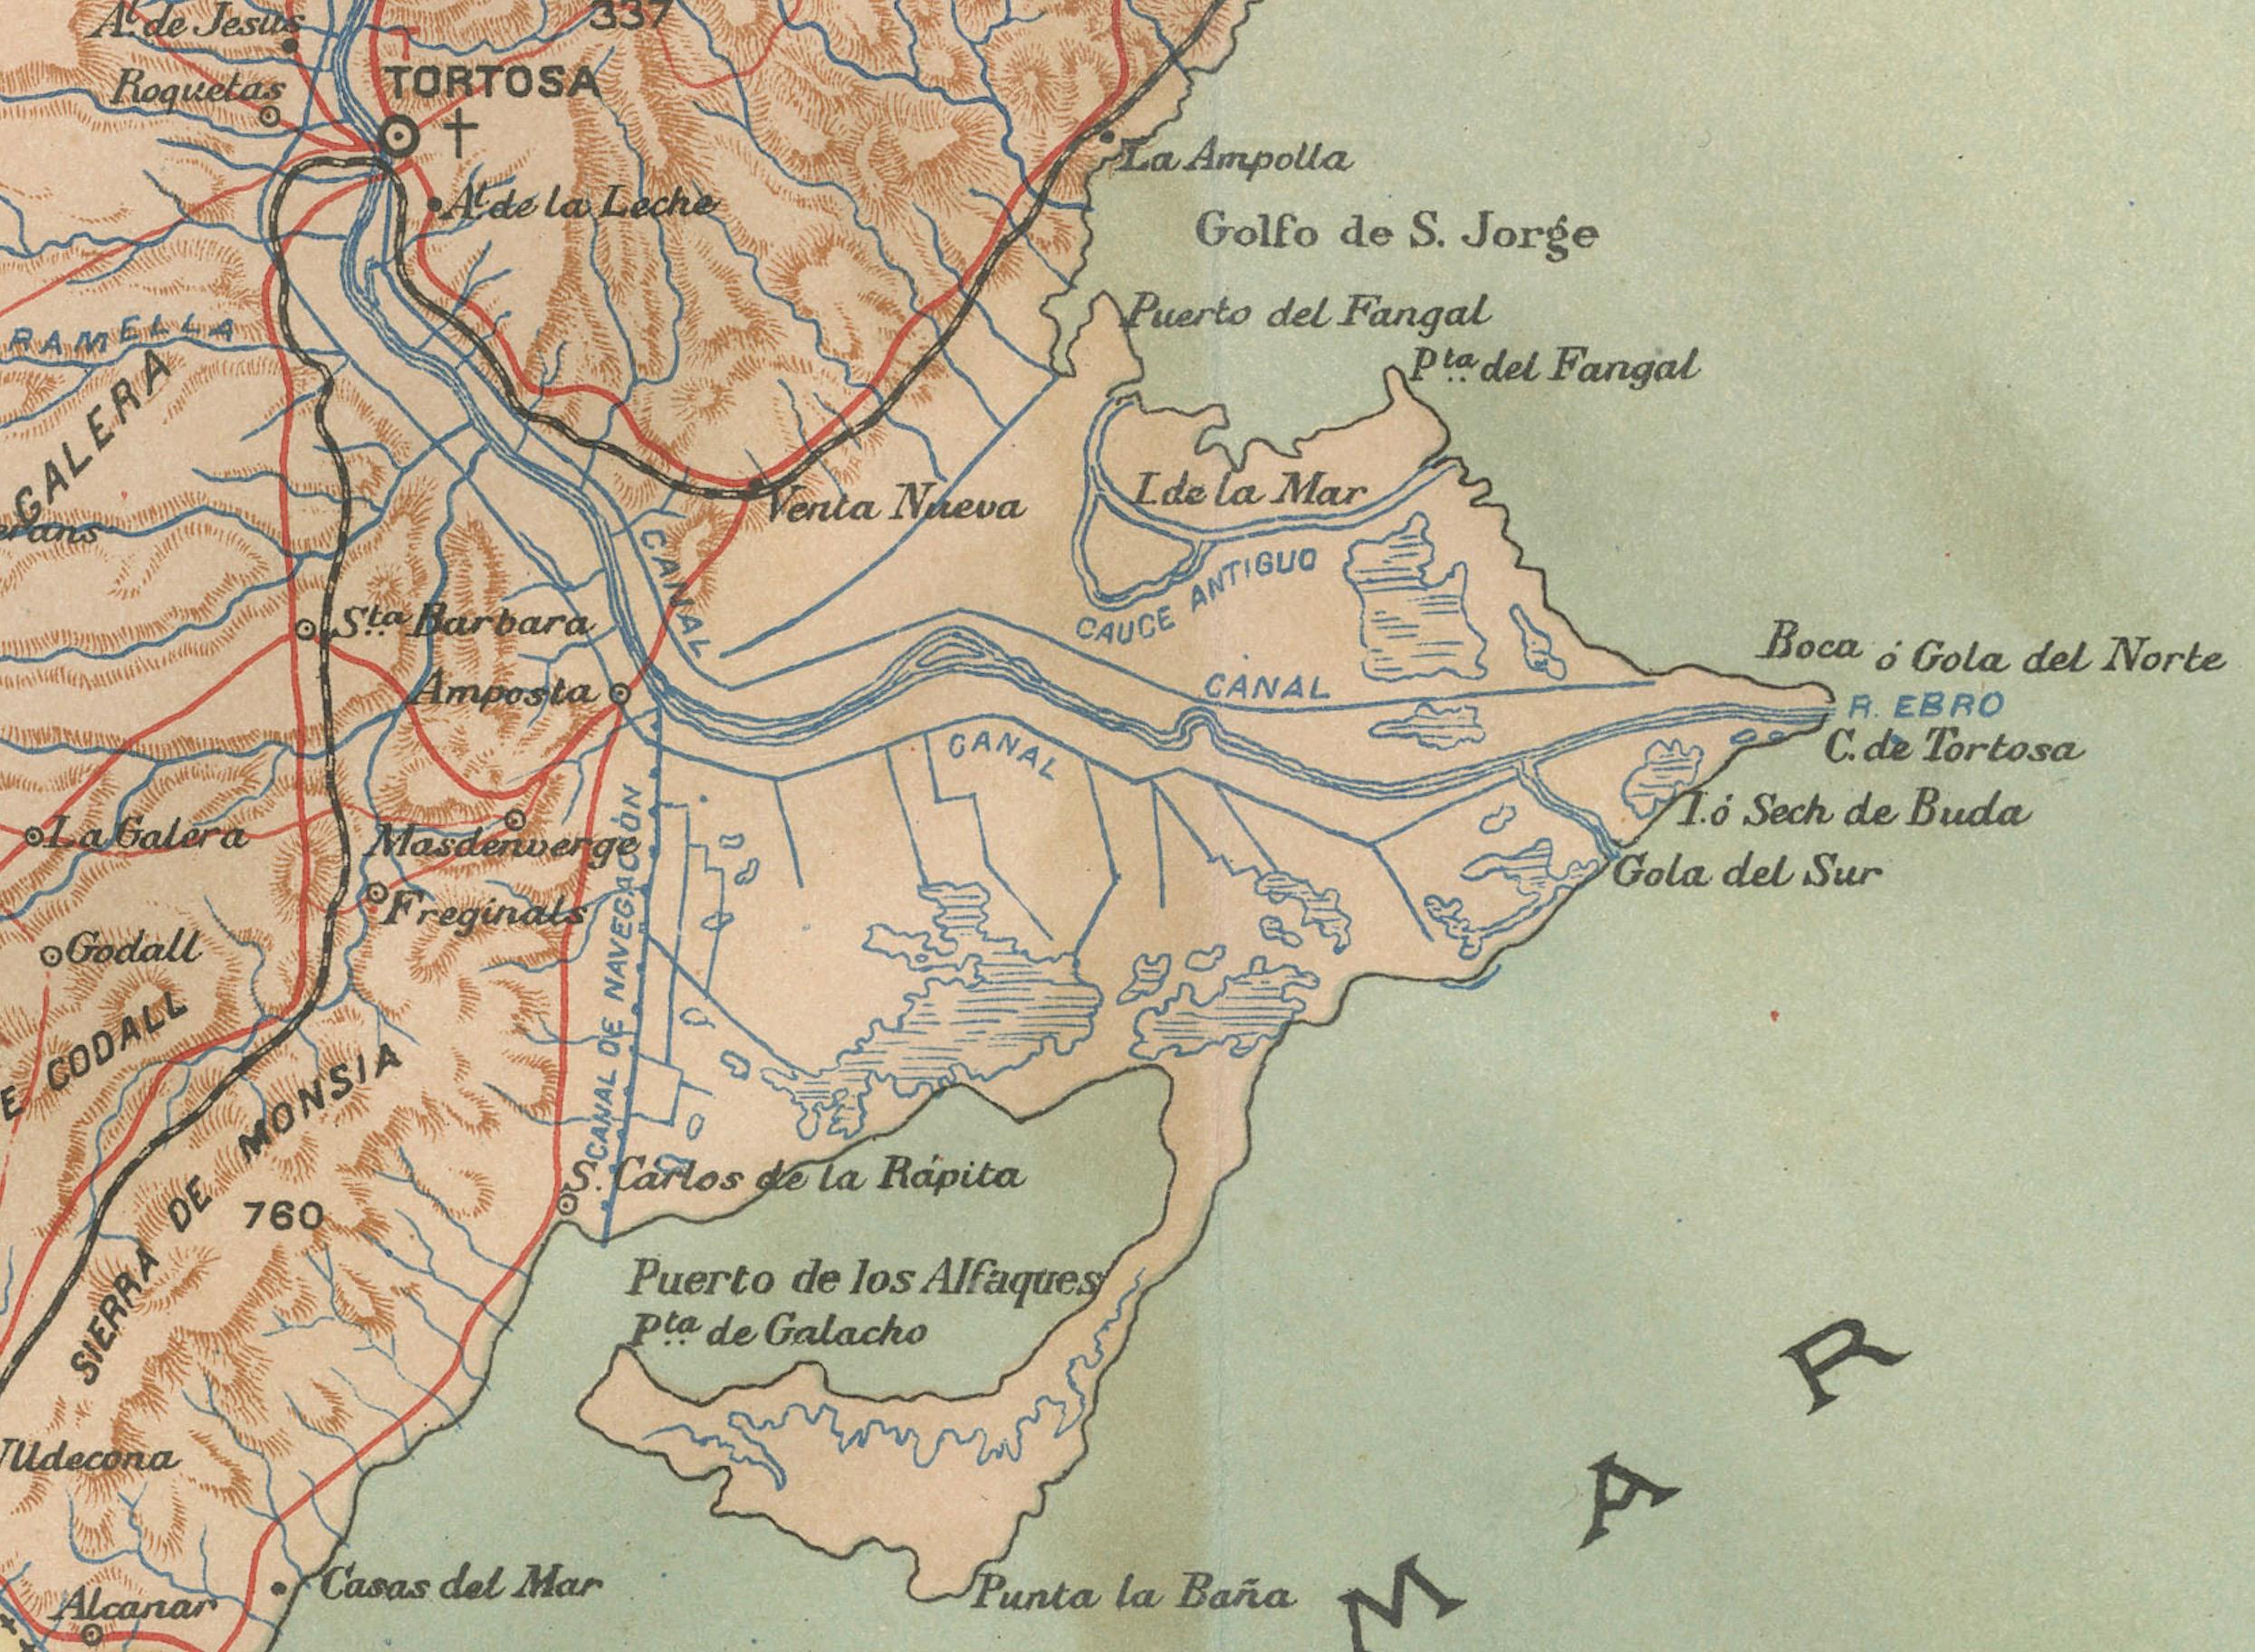 Dieses Bild zeigt eine historische Karte der Provinz Tarragona, die im nordöstlichen Teil Spaniens in der autonomen Gemeinschaft Katalonien liegt. Die Karte ist auf das Jahr 1901 datiert, was darauf hindeutet, dass sie über ein Jahrhundert alt ist